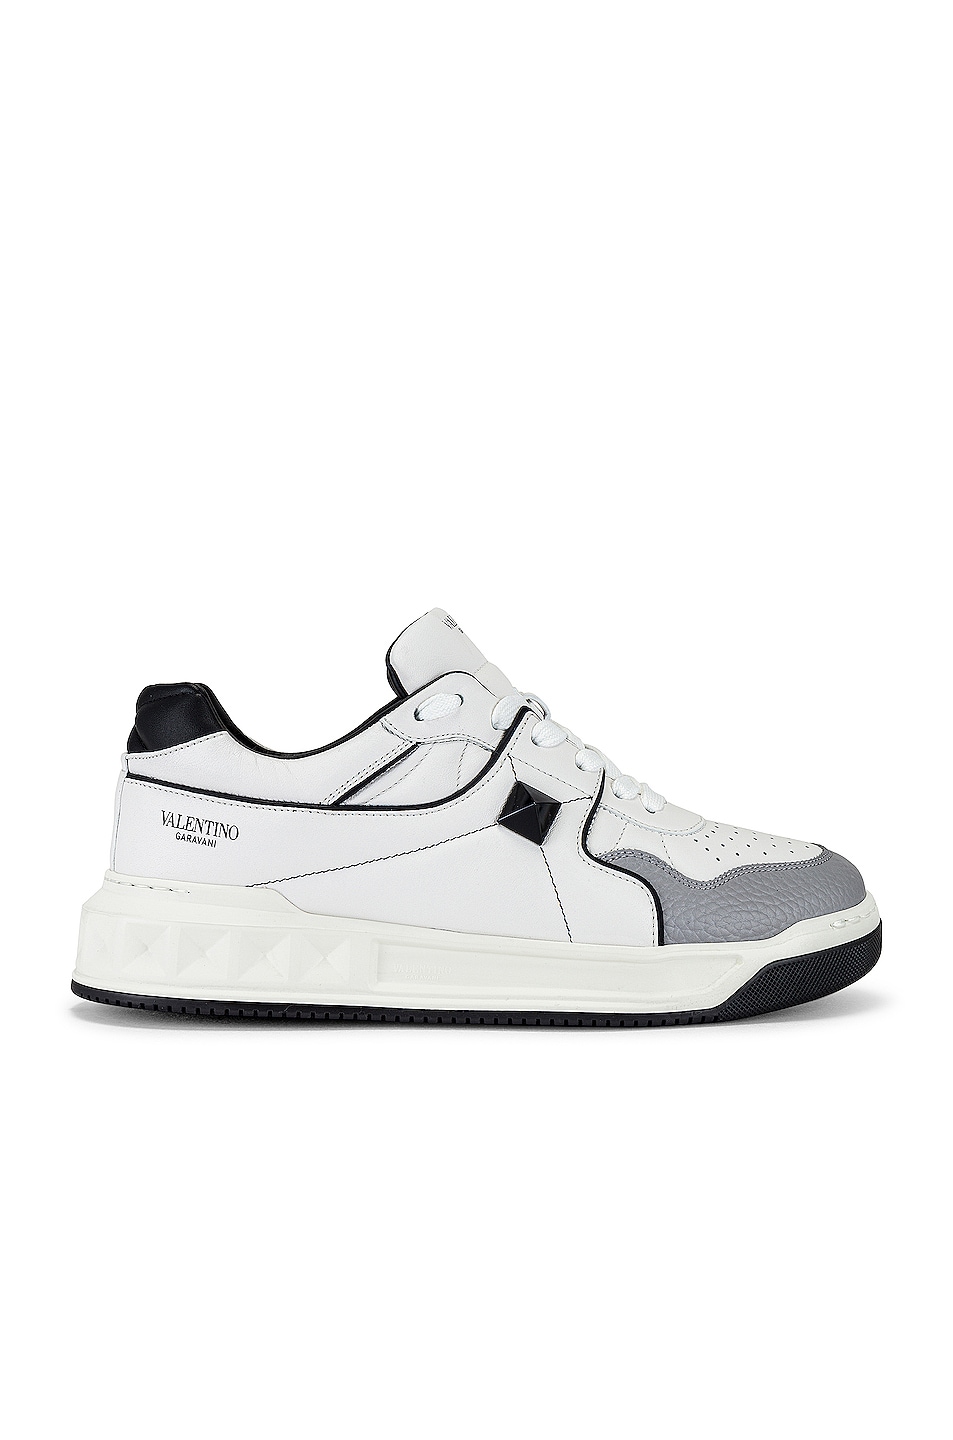 Image 1 of Valentino Garavani Low Top Sneaker in White, Black & Grey